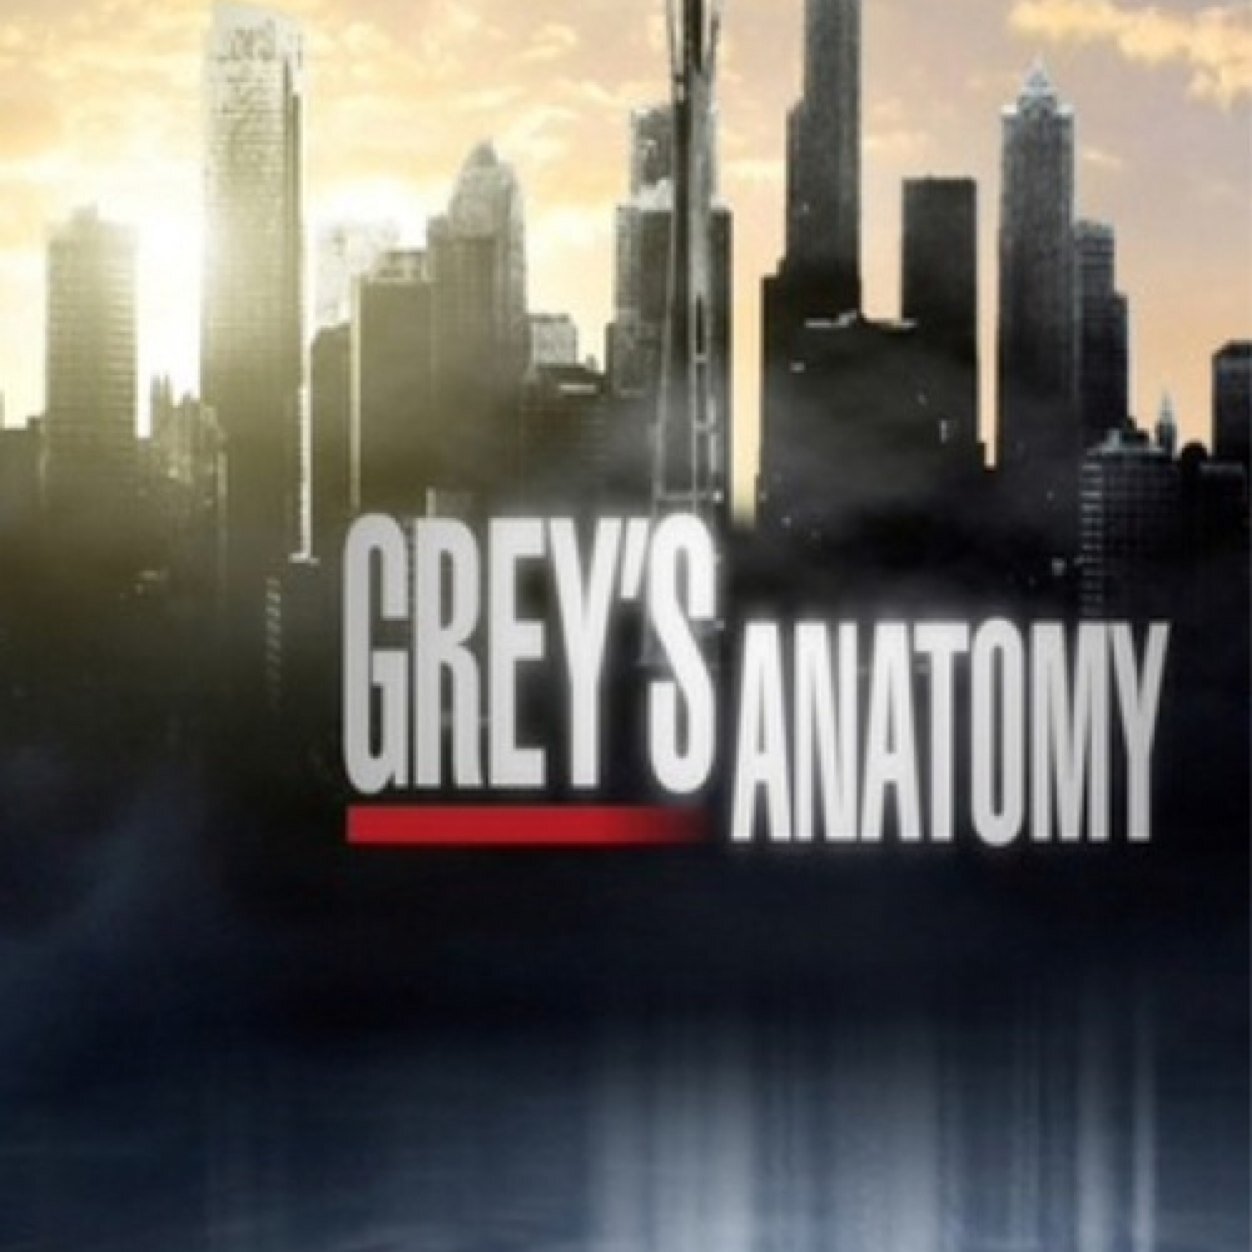 Twitter Officiel de la série Grey's Anatomy France © Diffusée tous les mercredis à 20h55 sur TF1.